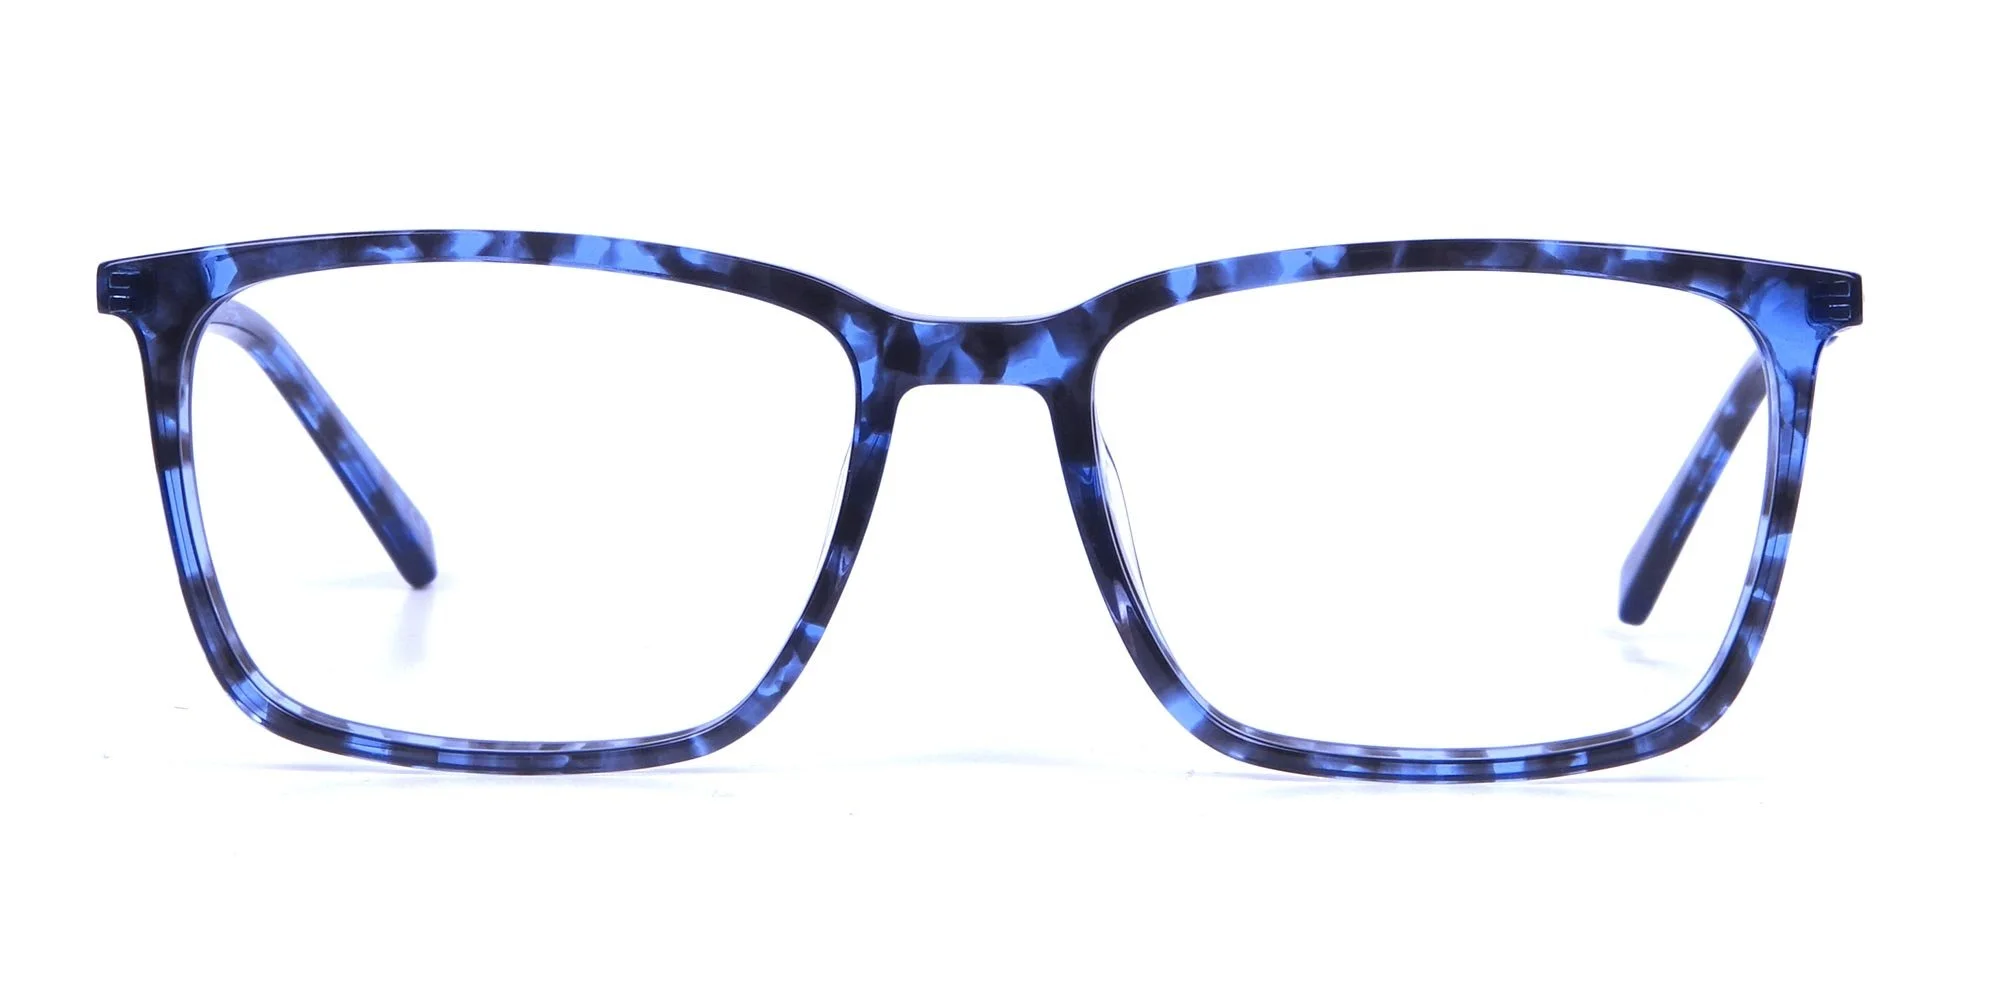 havana-and-tortoise-Shell-Square-glasses-frames-2